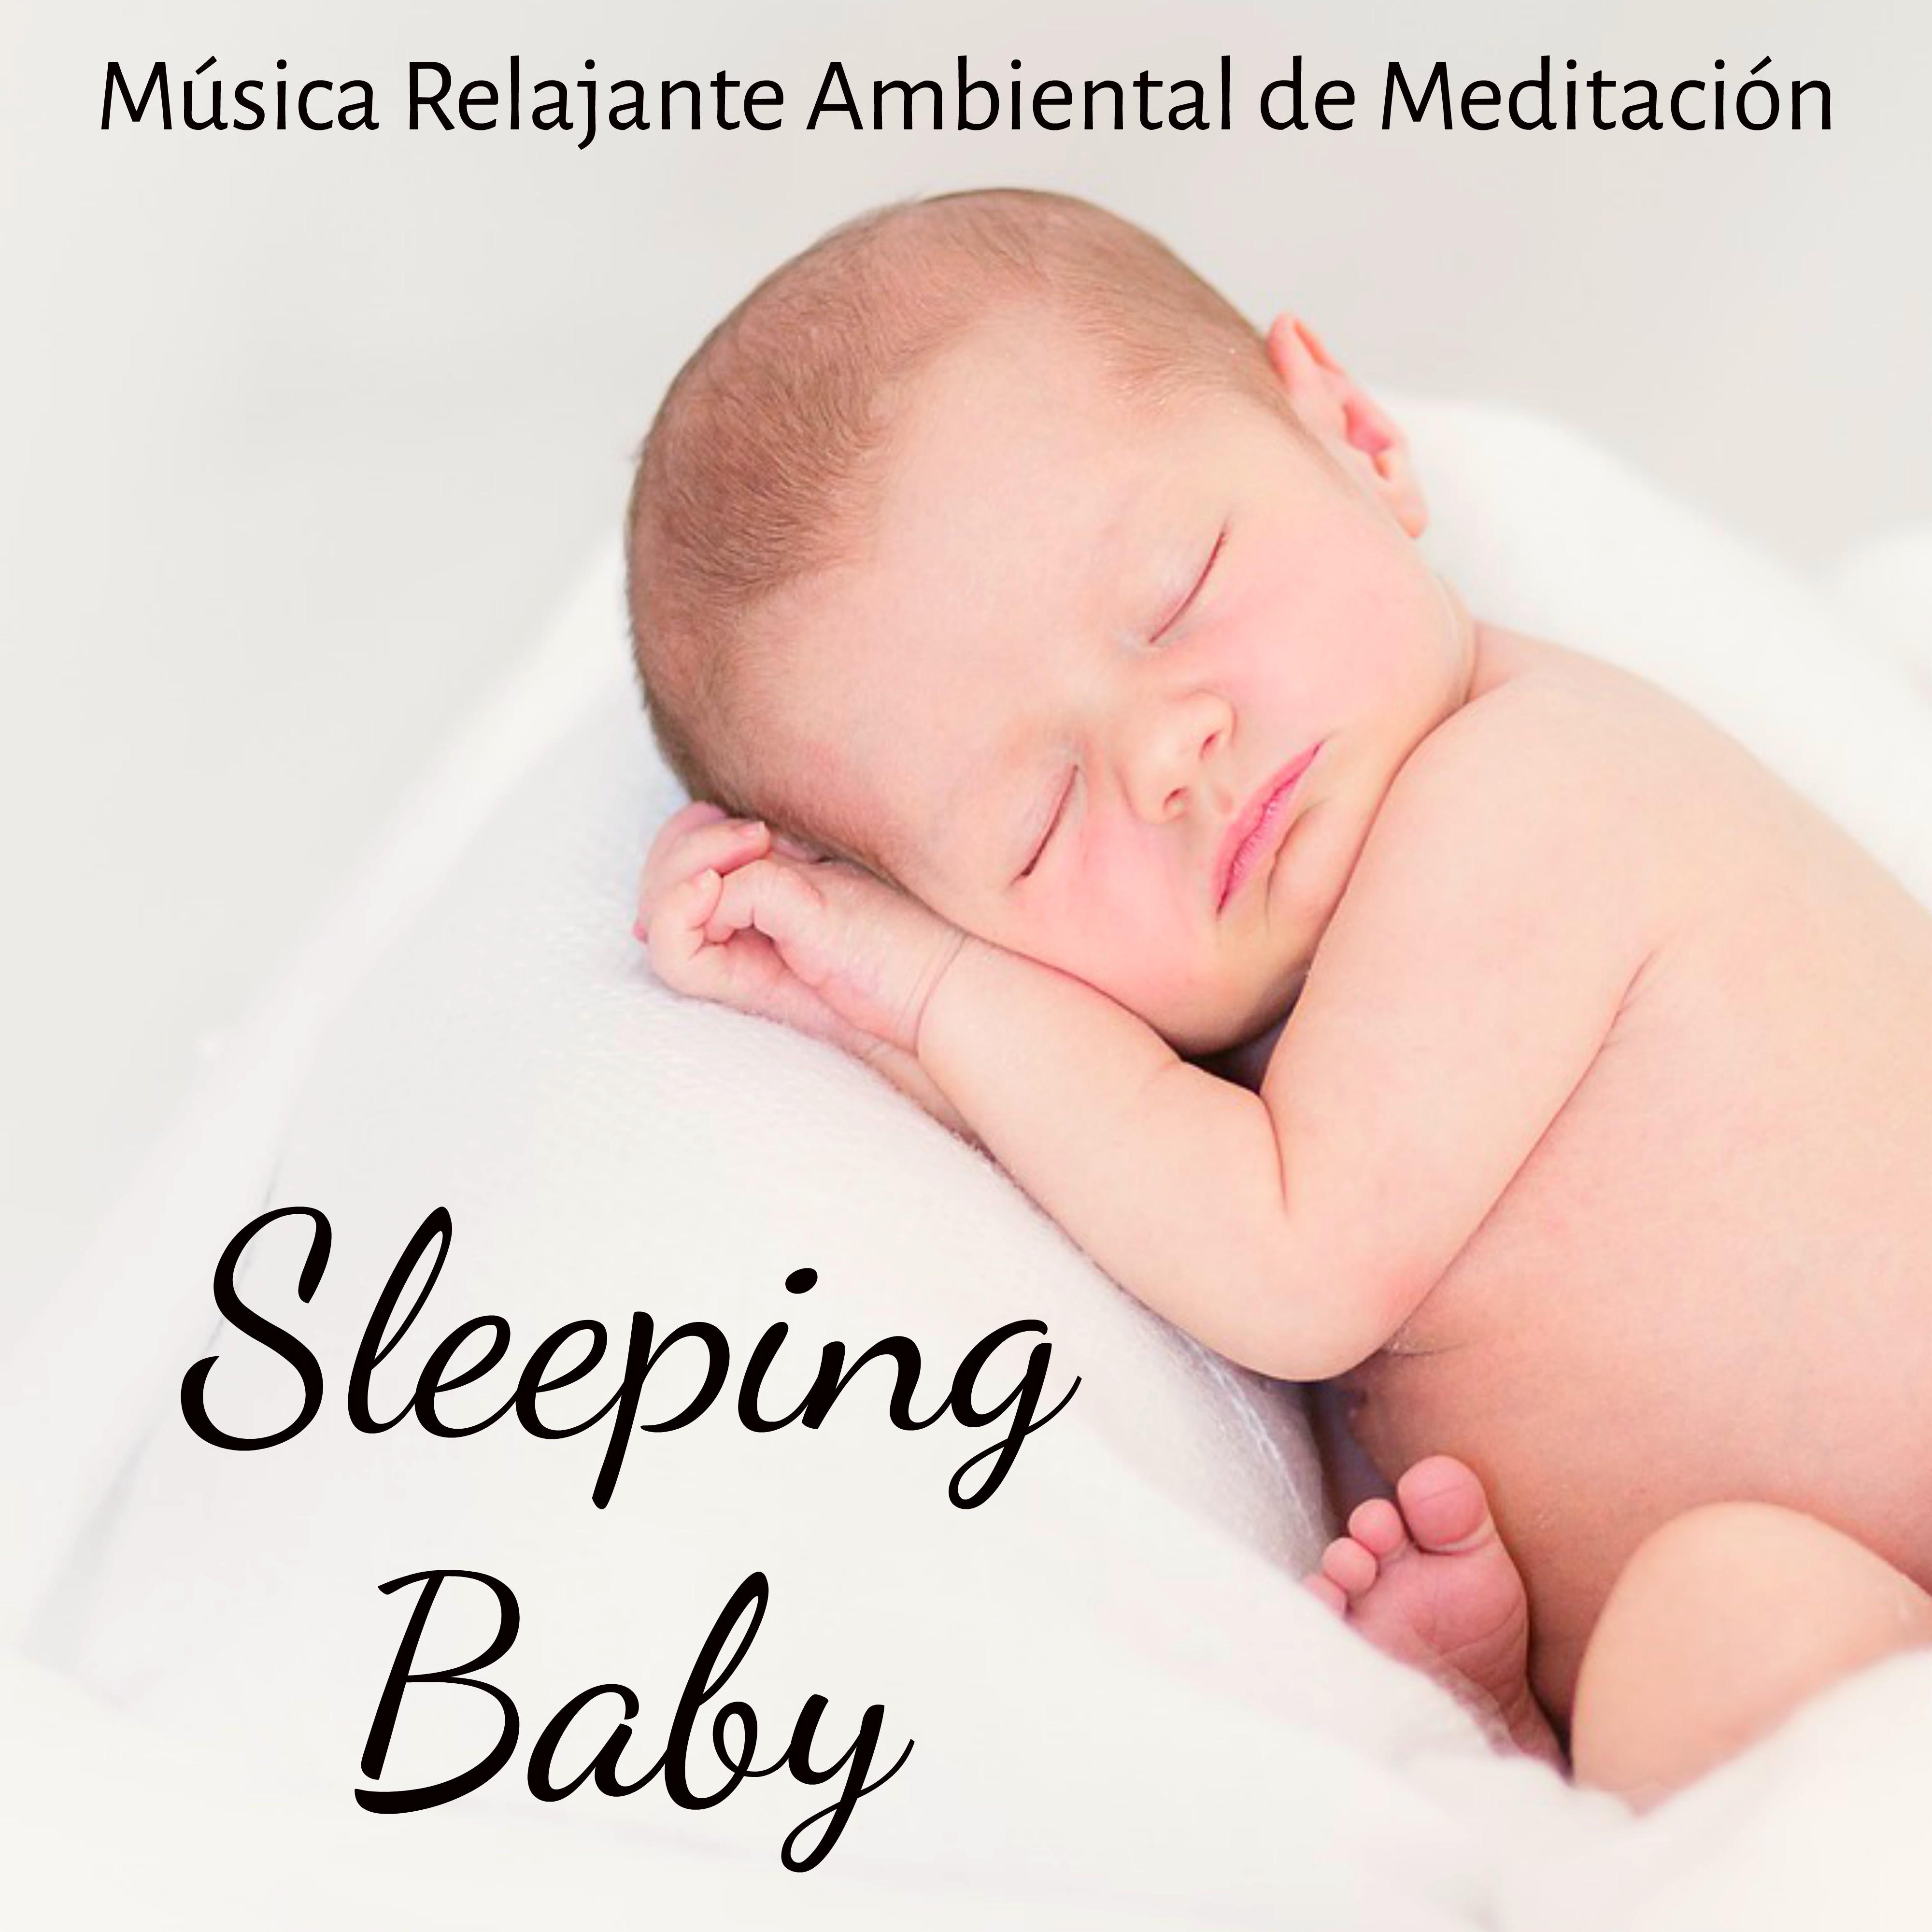 Sleeping Baby - Música Relajante Ambiental de Meditación para Estudio Mejor Dormir Bien Chakra del Corazón y Canción de Cuna para Niños con Sonidos naturales Binaurales New Age